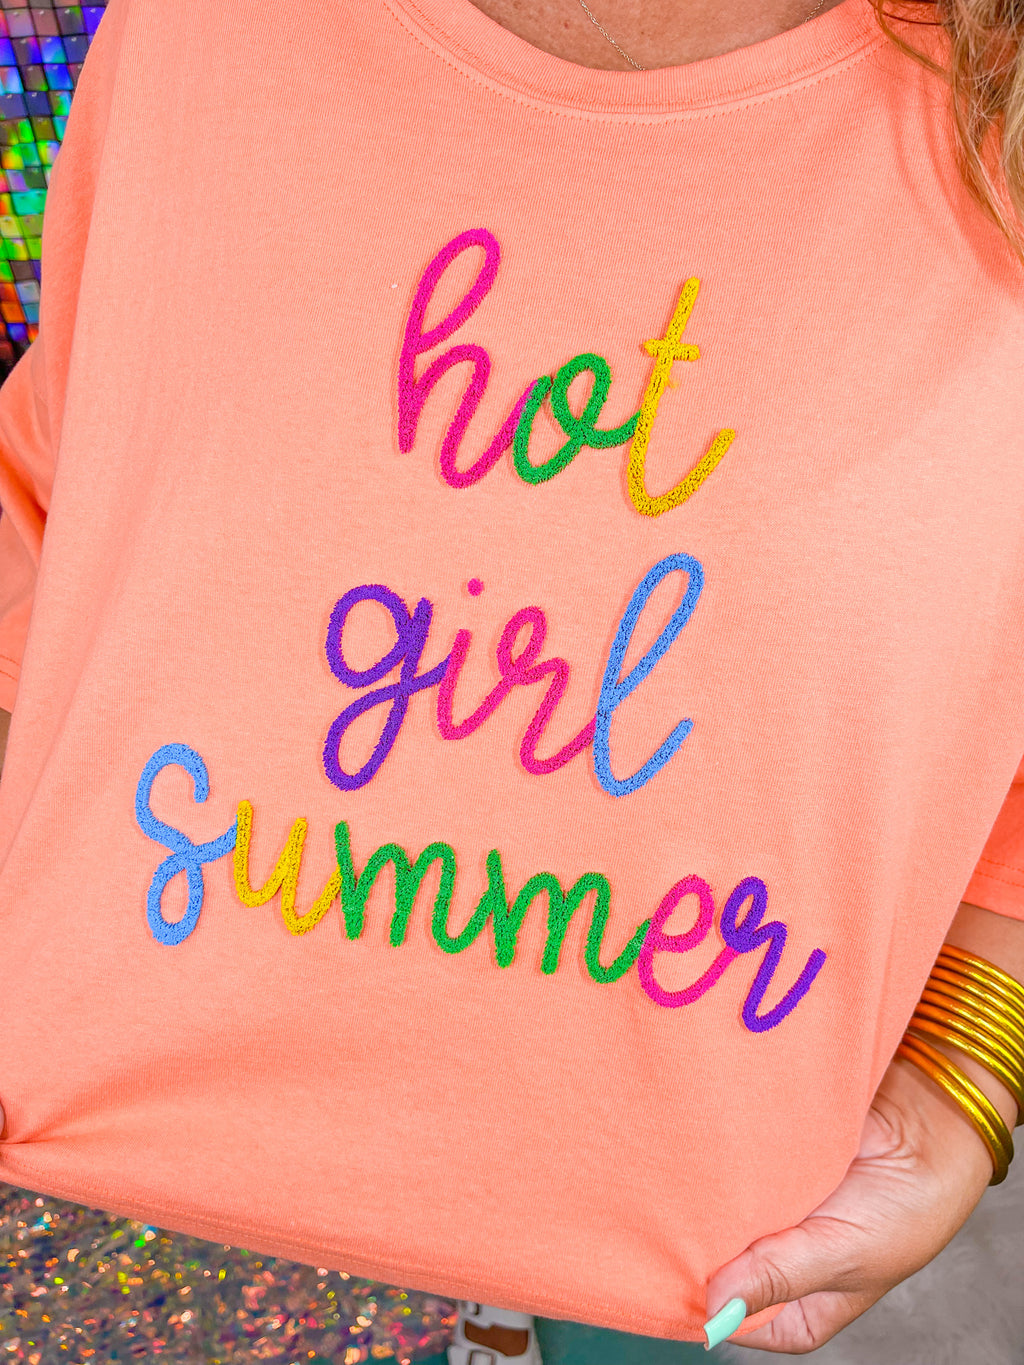 Hot Girl Summer Tee